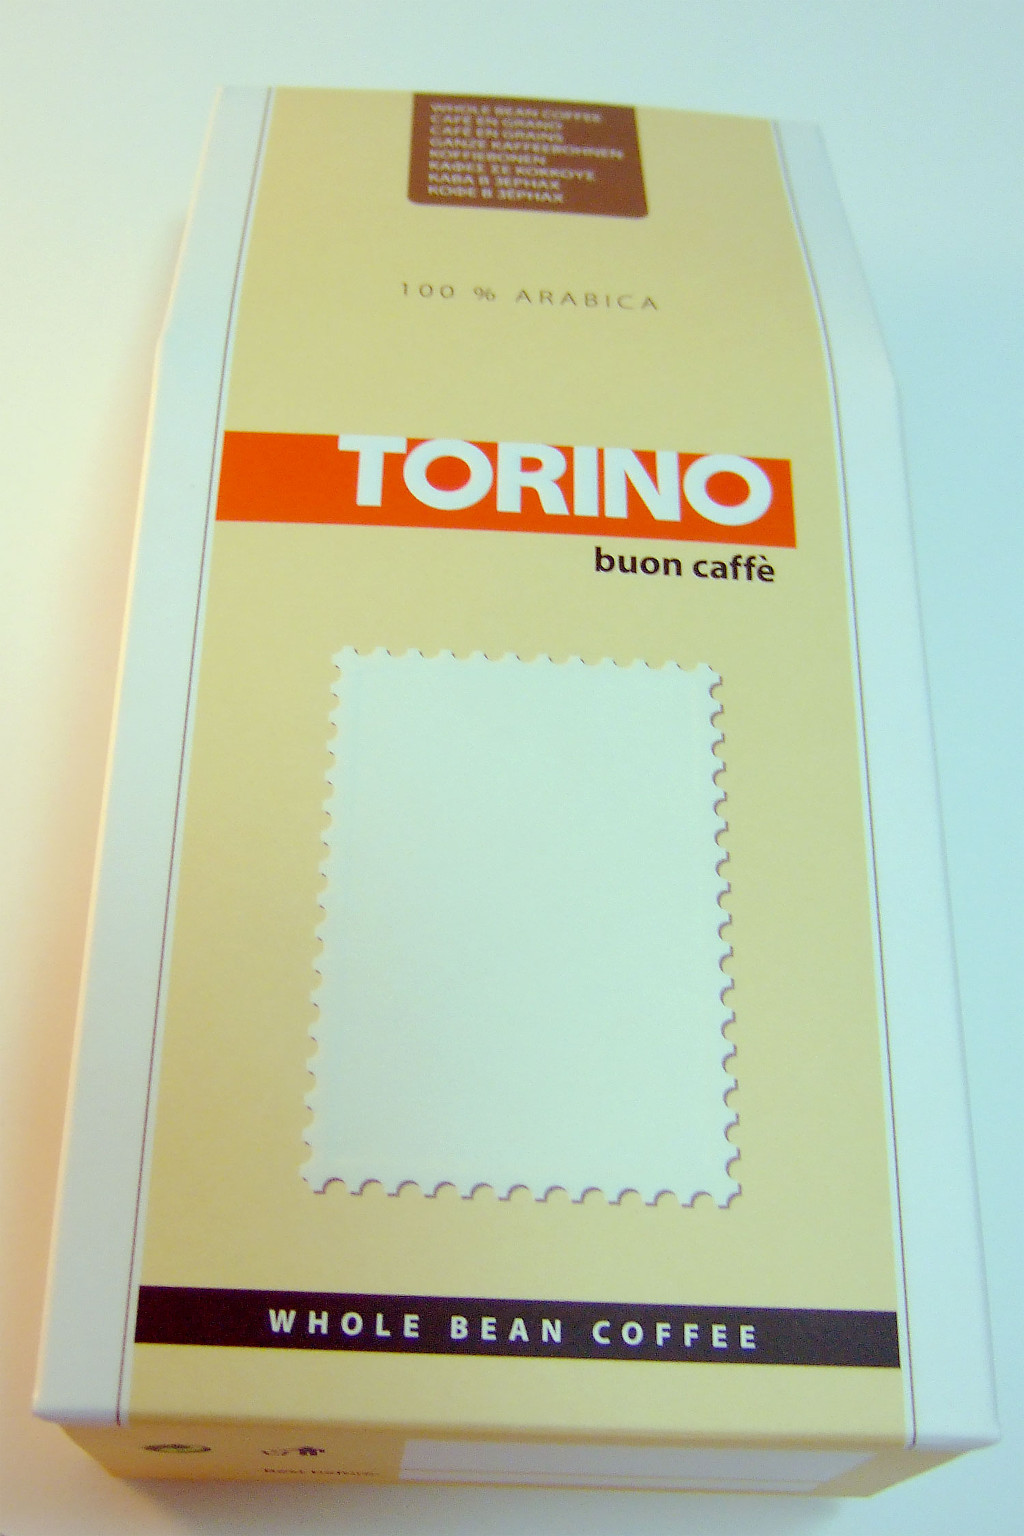 Друк упаковки «Torino». Поліграфія друкарні Макрос, виготовлення упаковки, специфікація 971993-1